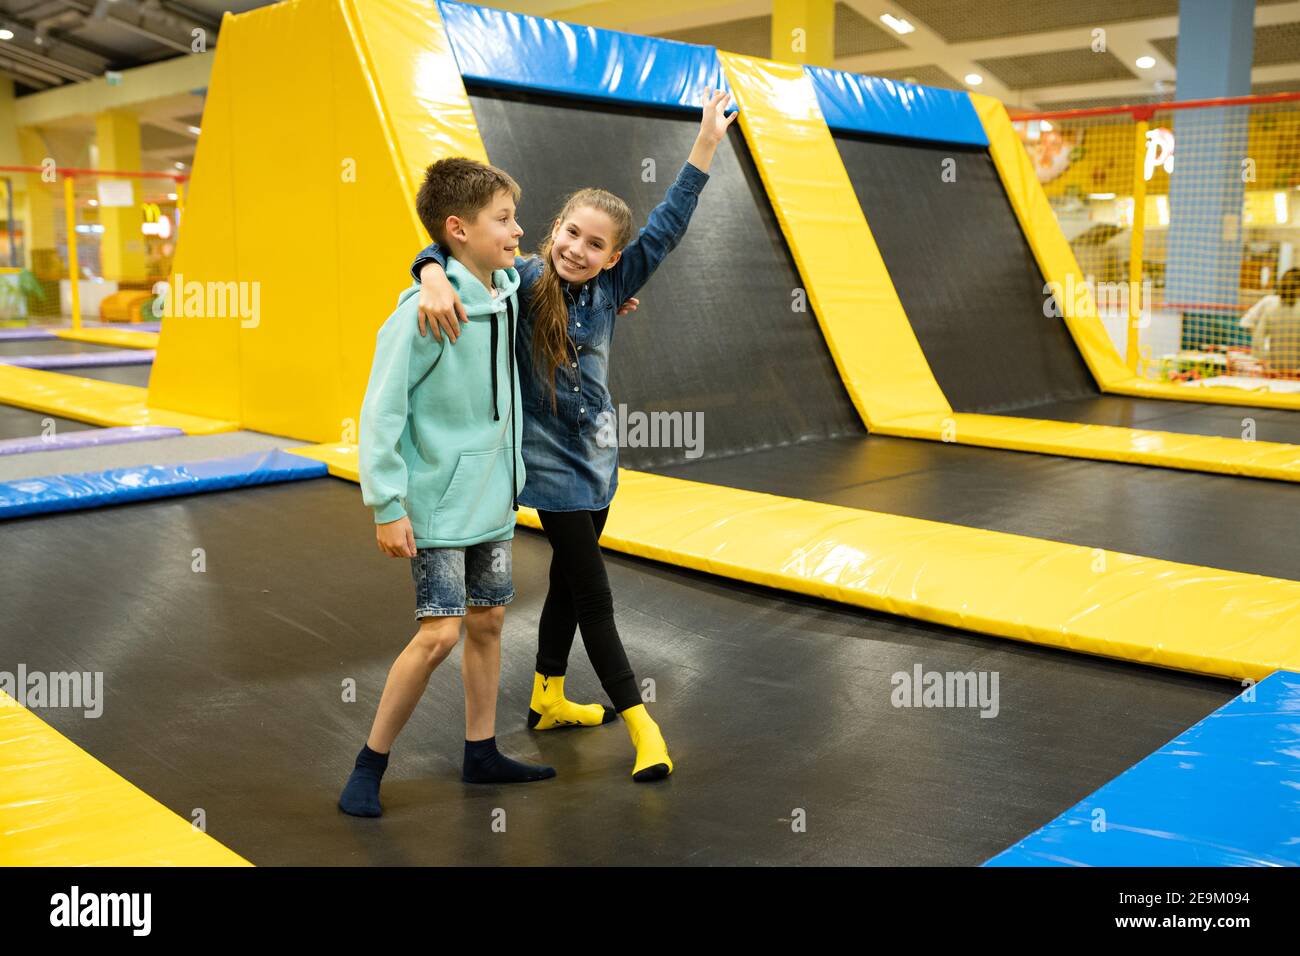 Souriant, les enfants de 11 ans sautaient sur un trampoline à l'intérieur du centre de divertissement. Activités de loisirs pour les enfants, saut et jeu sur trampoline Banque D'Images